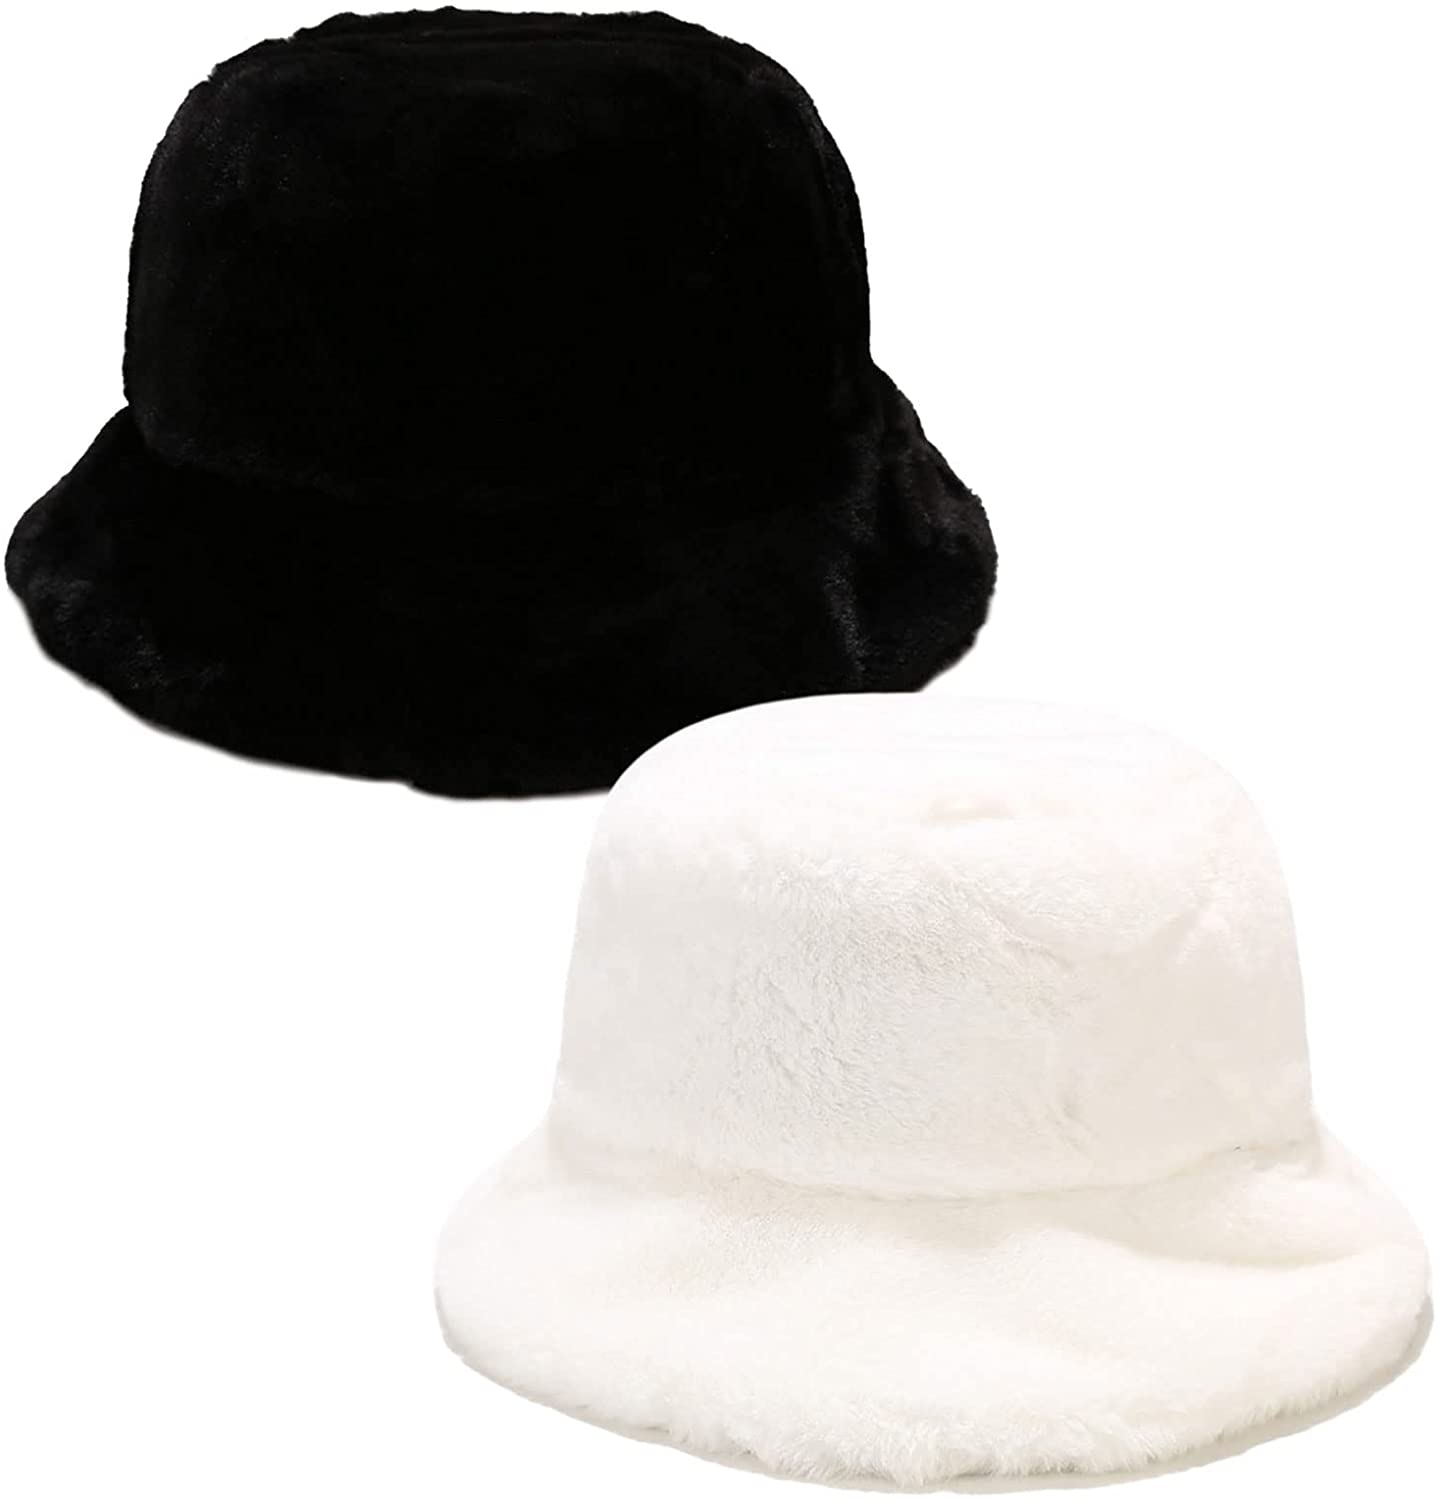 Debra Weitzner Rain Hat 2-in-1 Reversible Cloche Rain Bucket Hats Packable